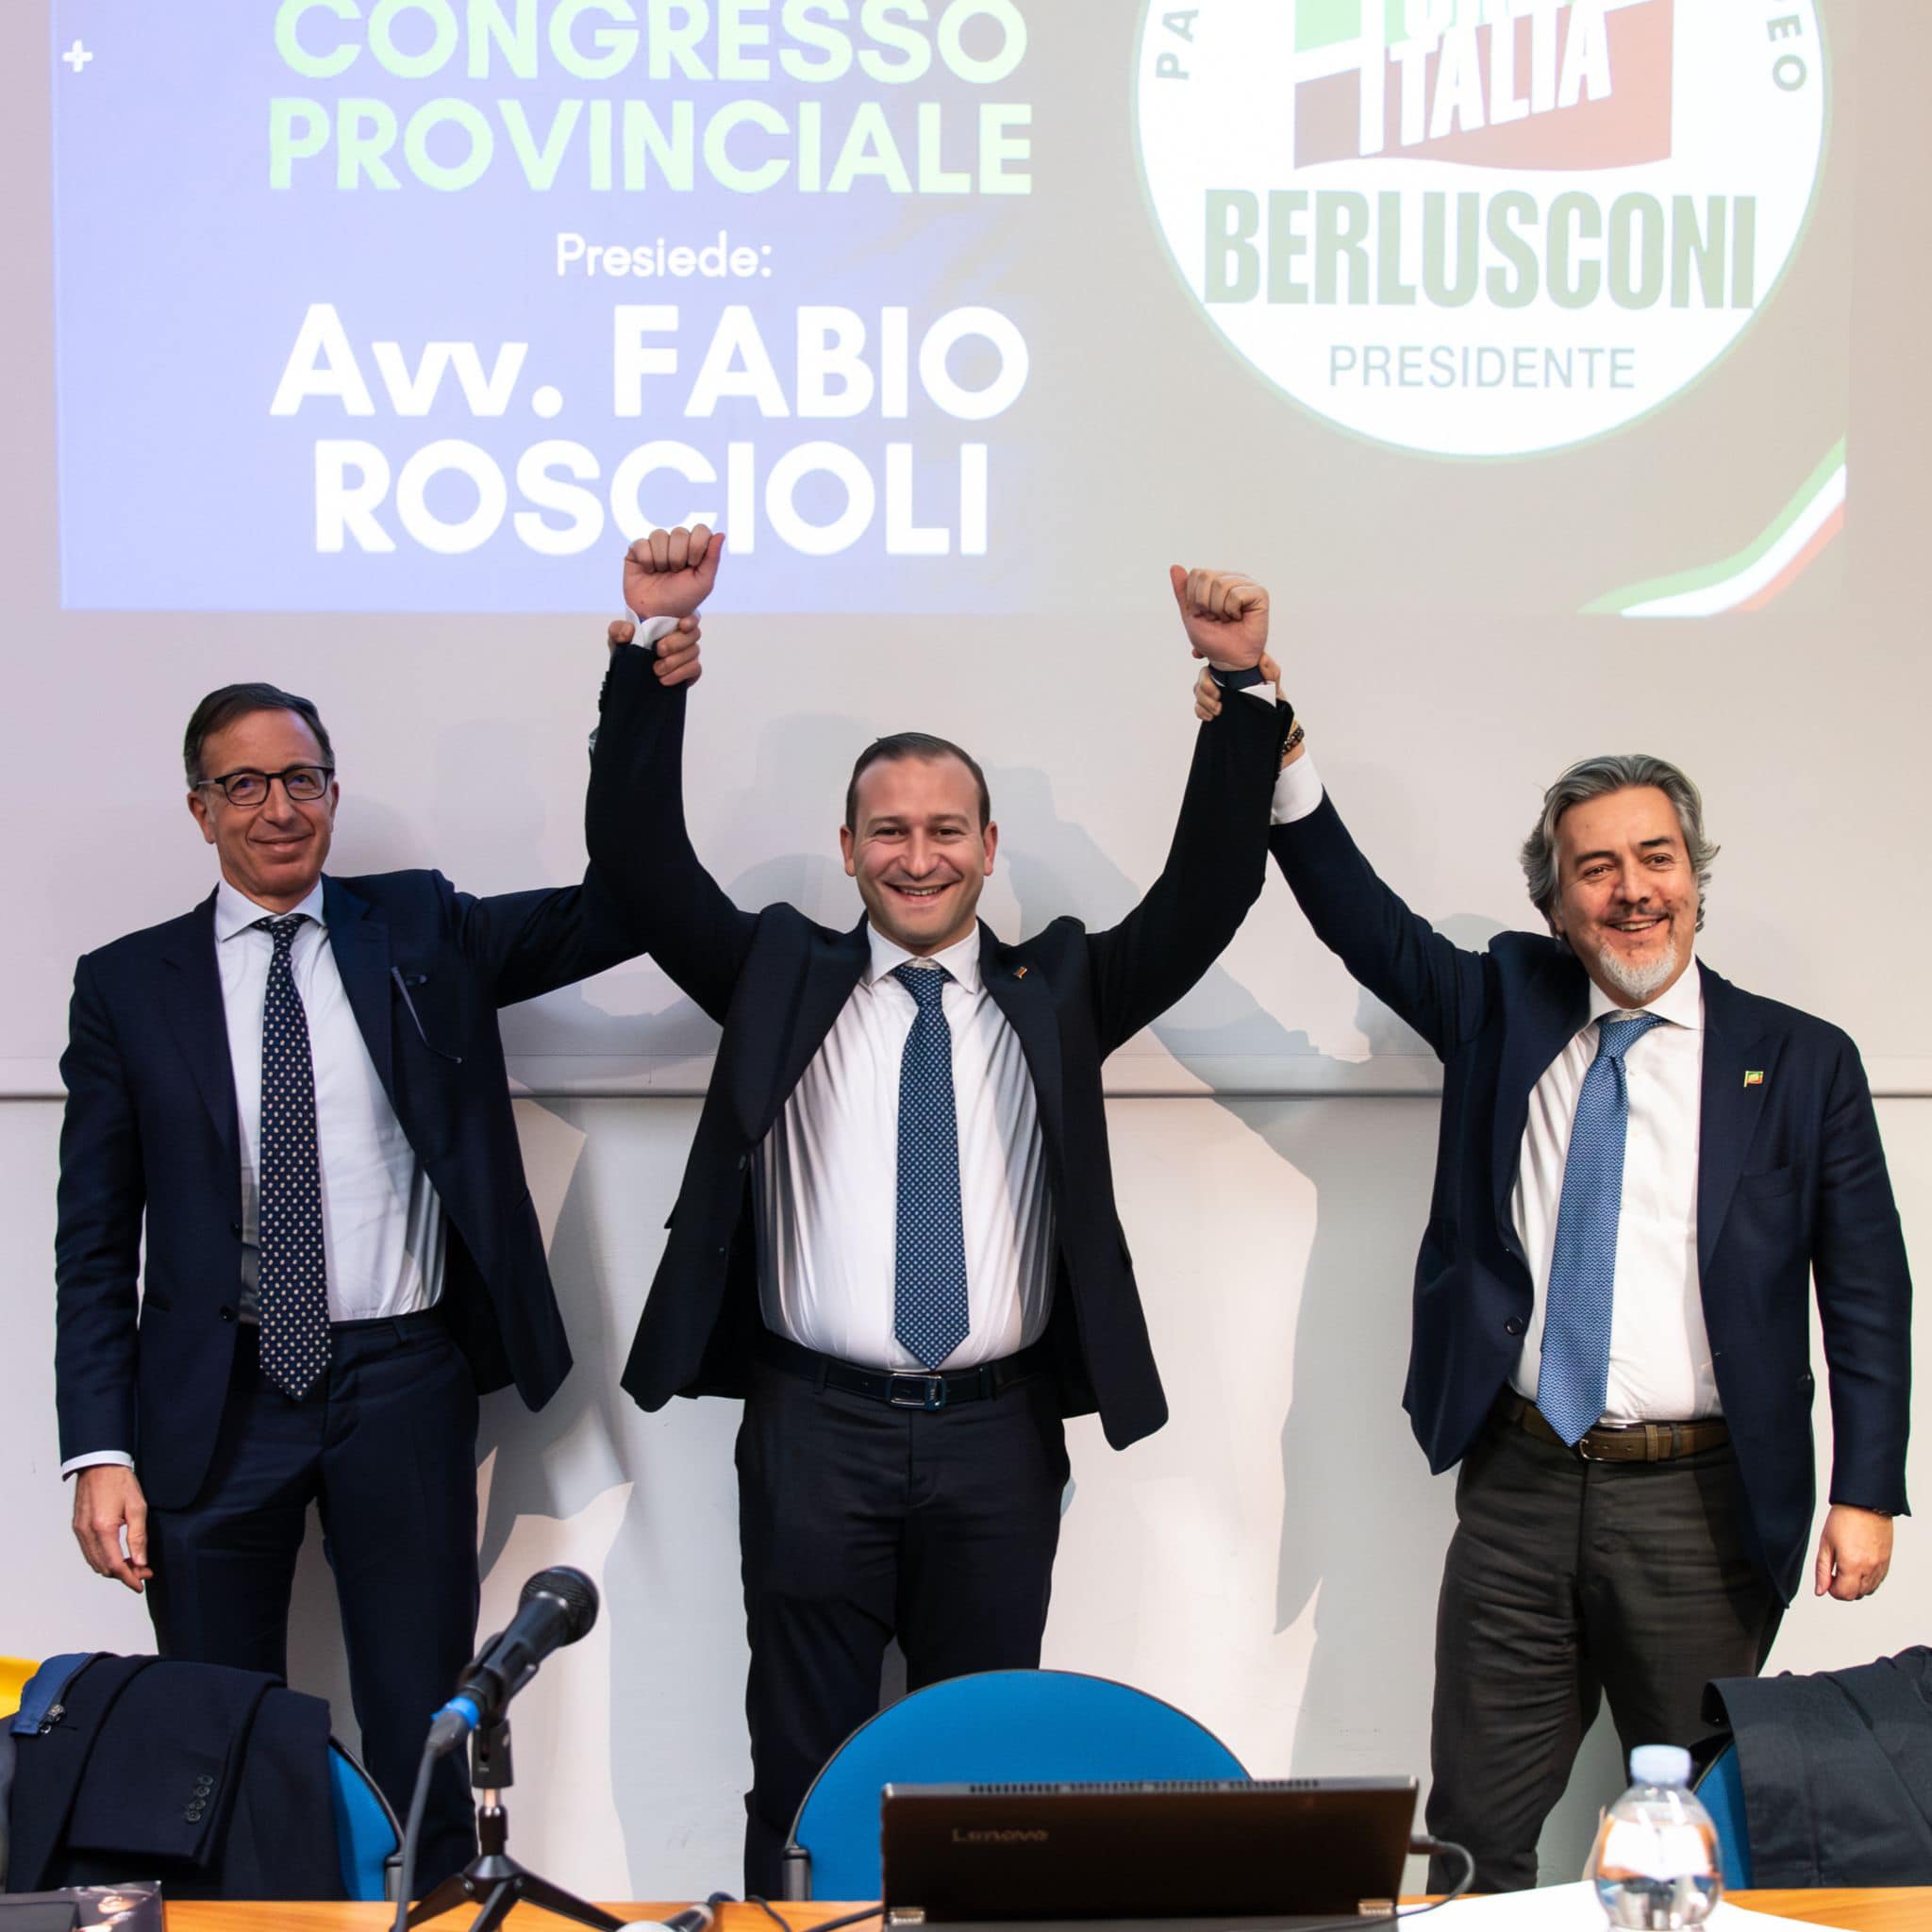 Ascoli Piceno - Valerio Pignotti nuovo coordinatore provinciale di Forza Italia